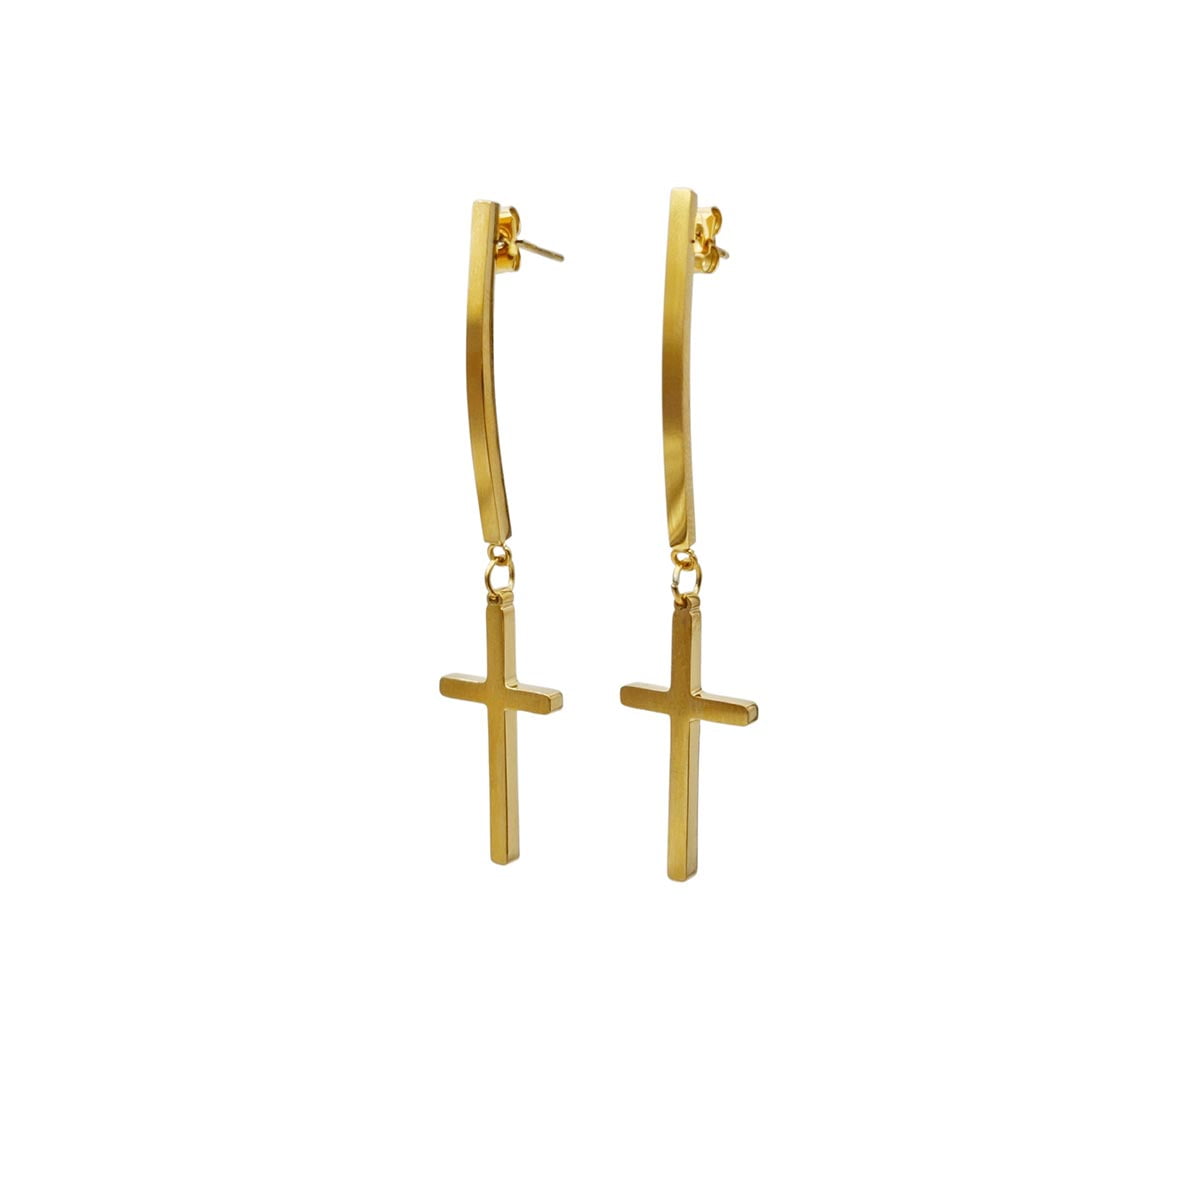 σκουλαρίκια Roxy σε σχήμα σταυρού σε χρυσό χρώμα